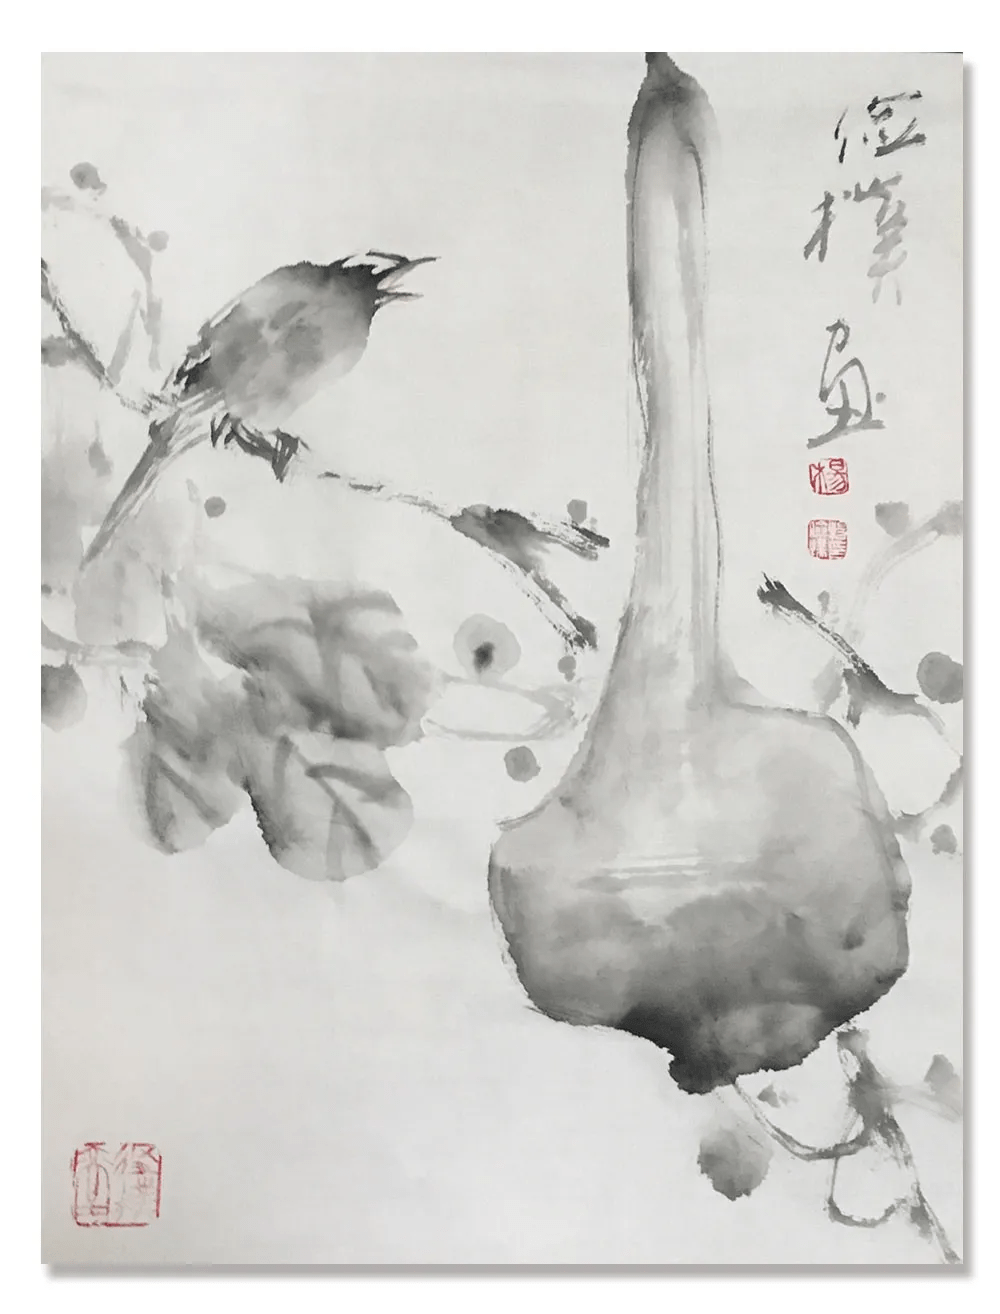 杨俭朴,1957年生于四川南充.现为中国美术家协会会员.职业画家.